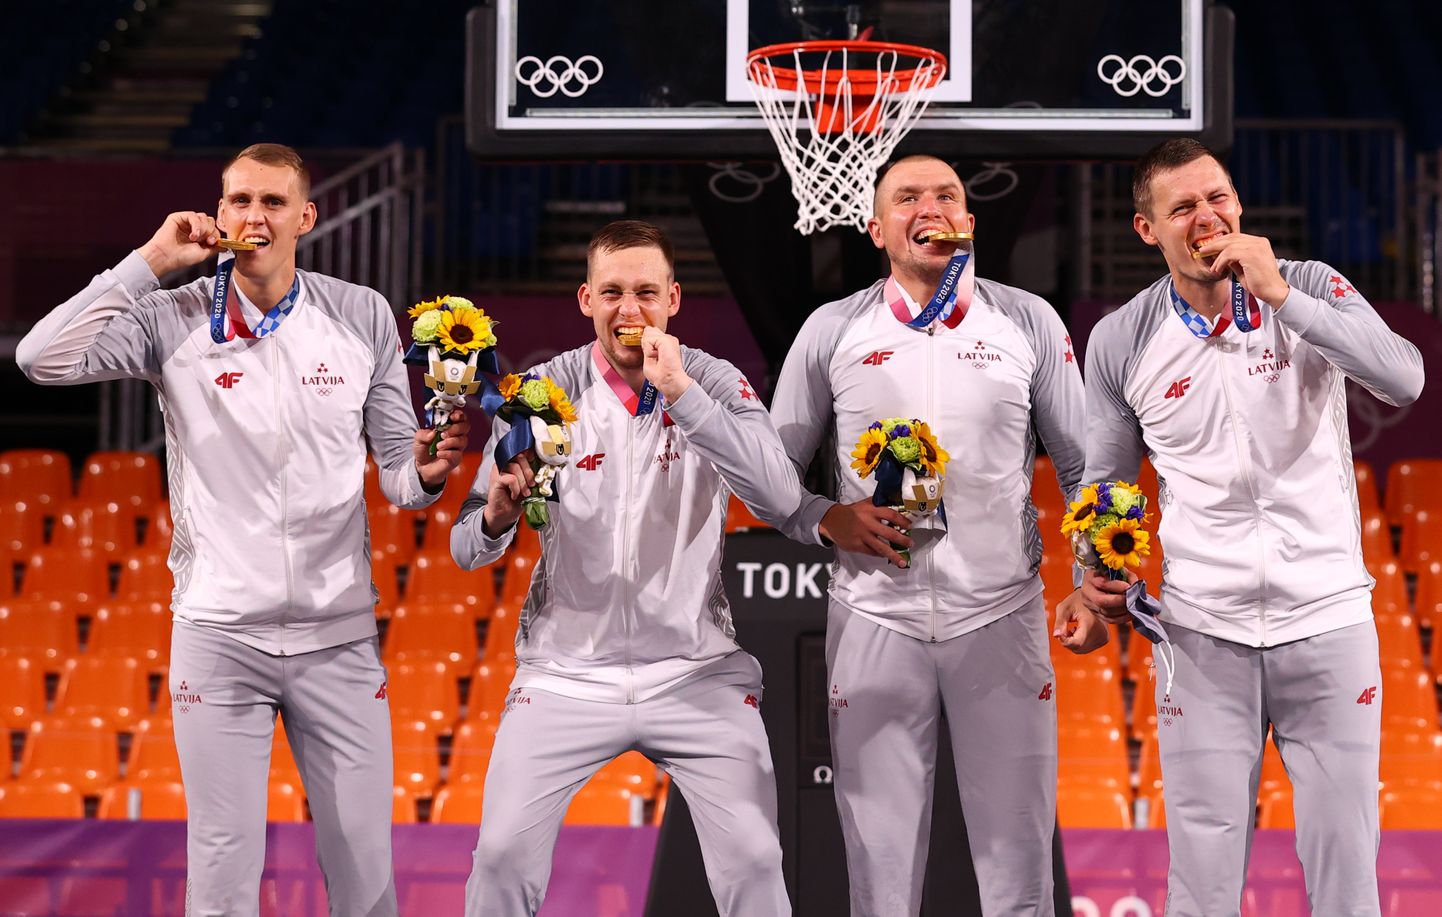 Latvijas 3x3 basketbolisti ar Tokijas olimpisko spēļu zelta medaļām- Nauris Miezis, Kārlis Pauls Lasmanis, Edgars Krūmiņš un Agnis Čavars